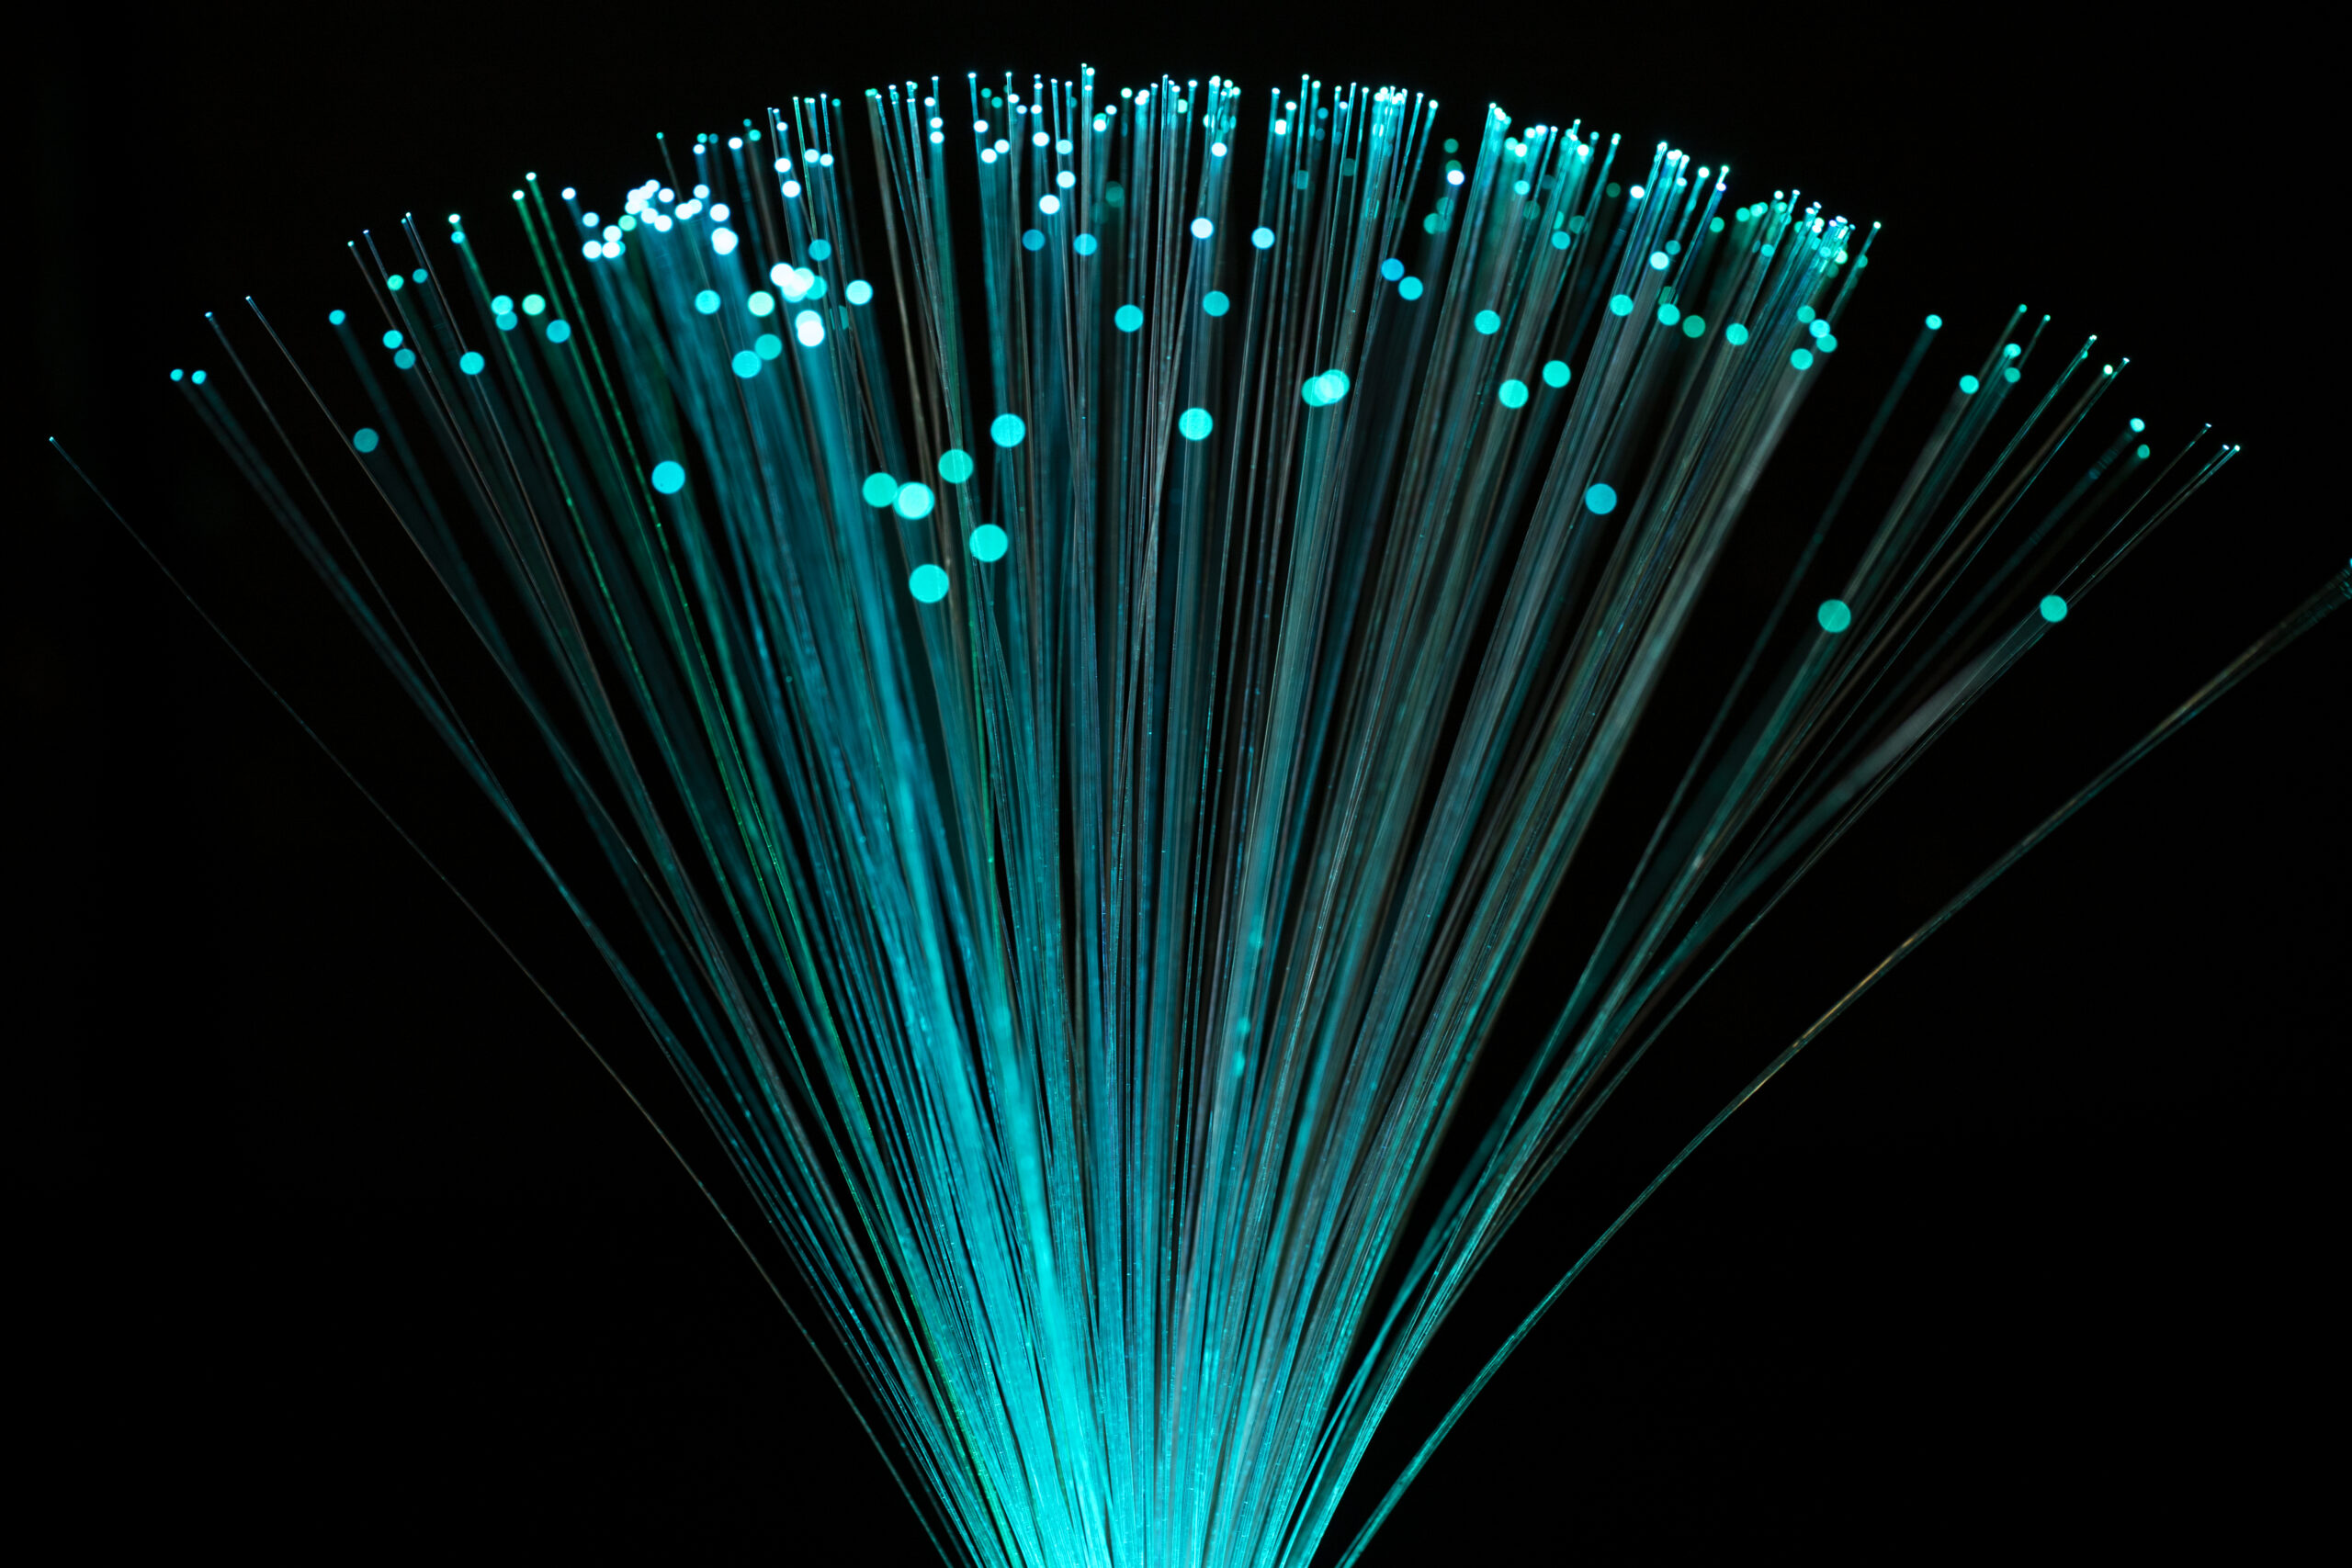 fibra óptica e suas vantagens